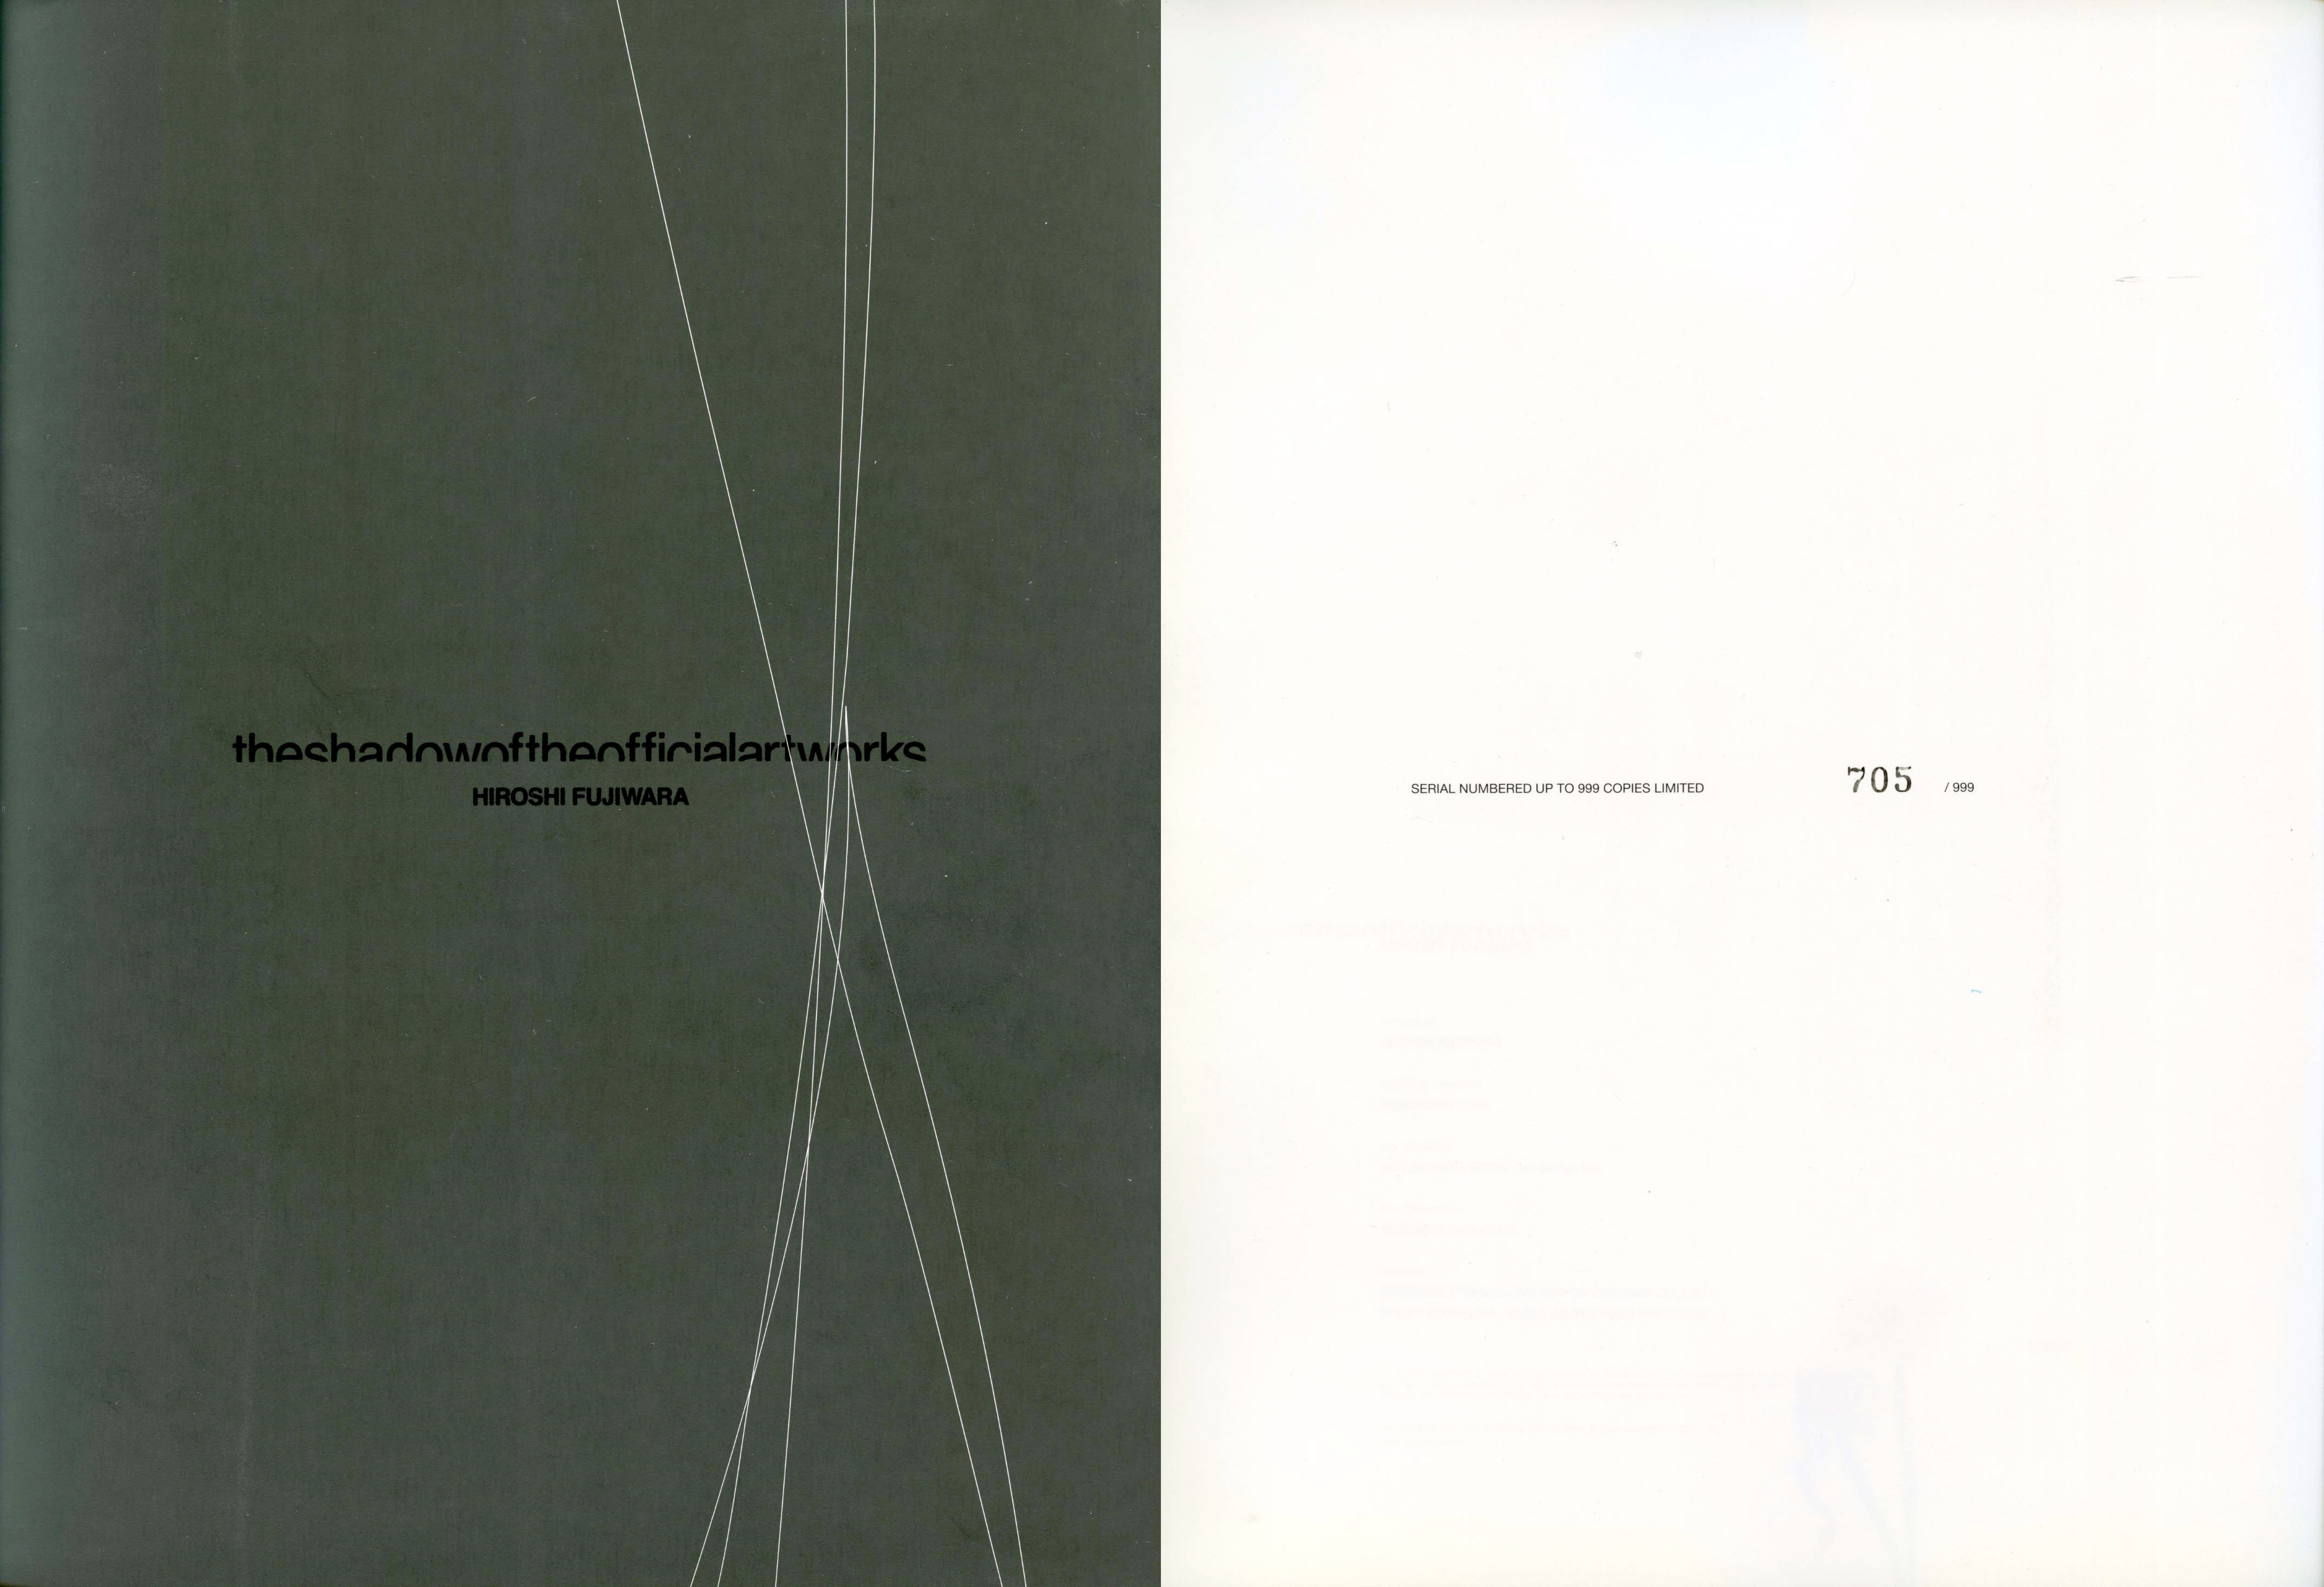 Hiroshi Fujiwara: The Shadow Of the Official Artworks